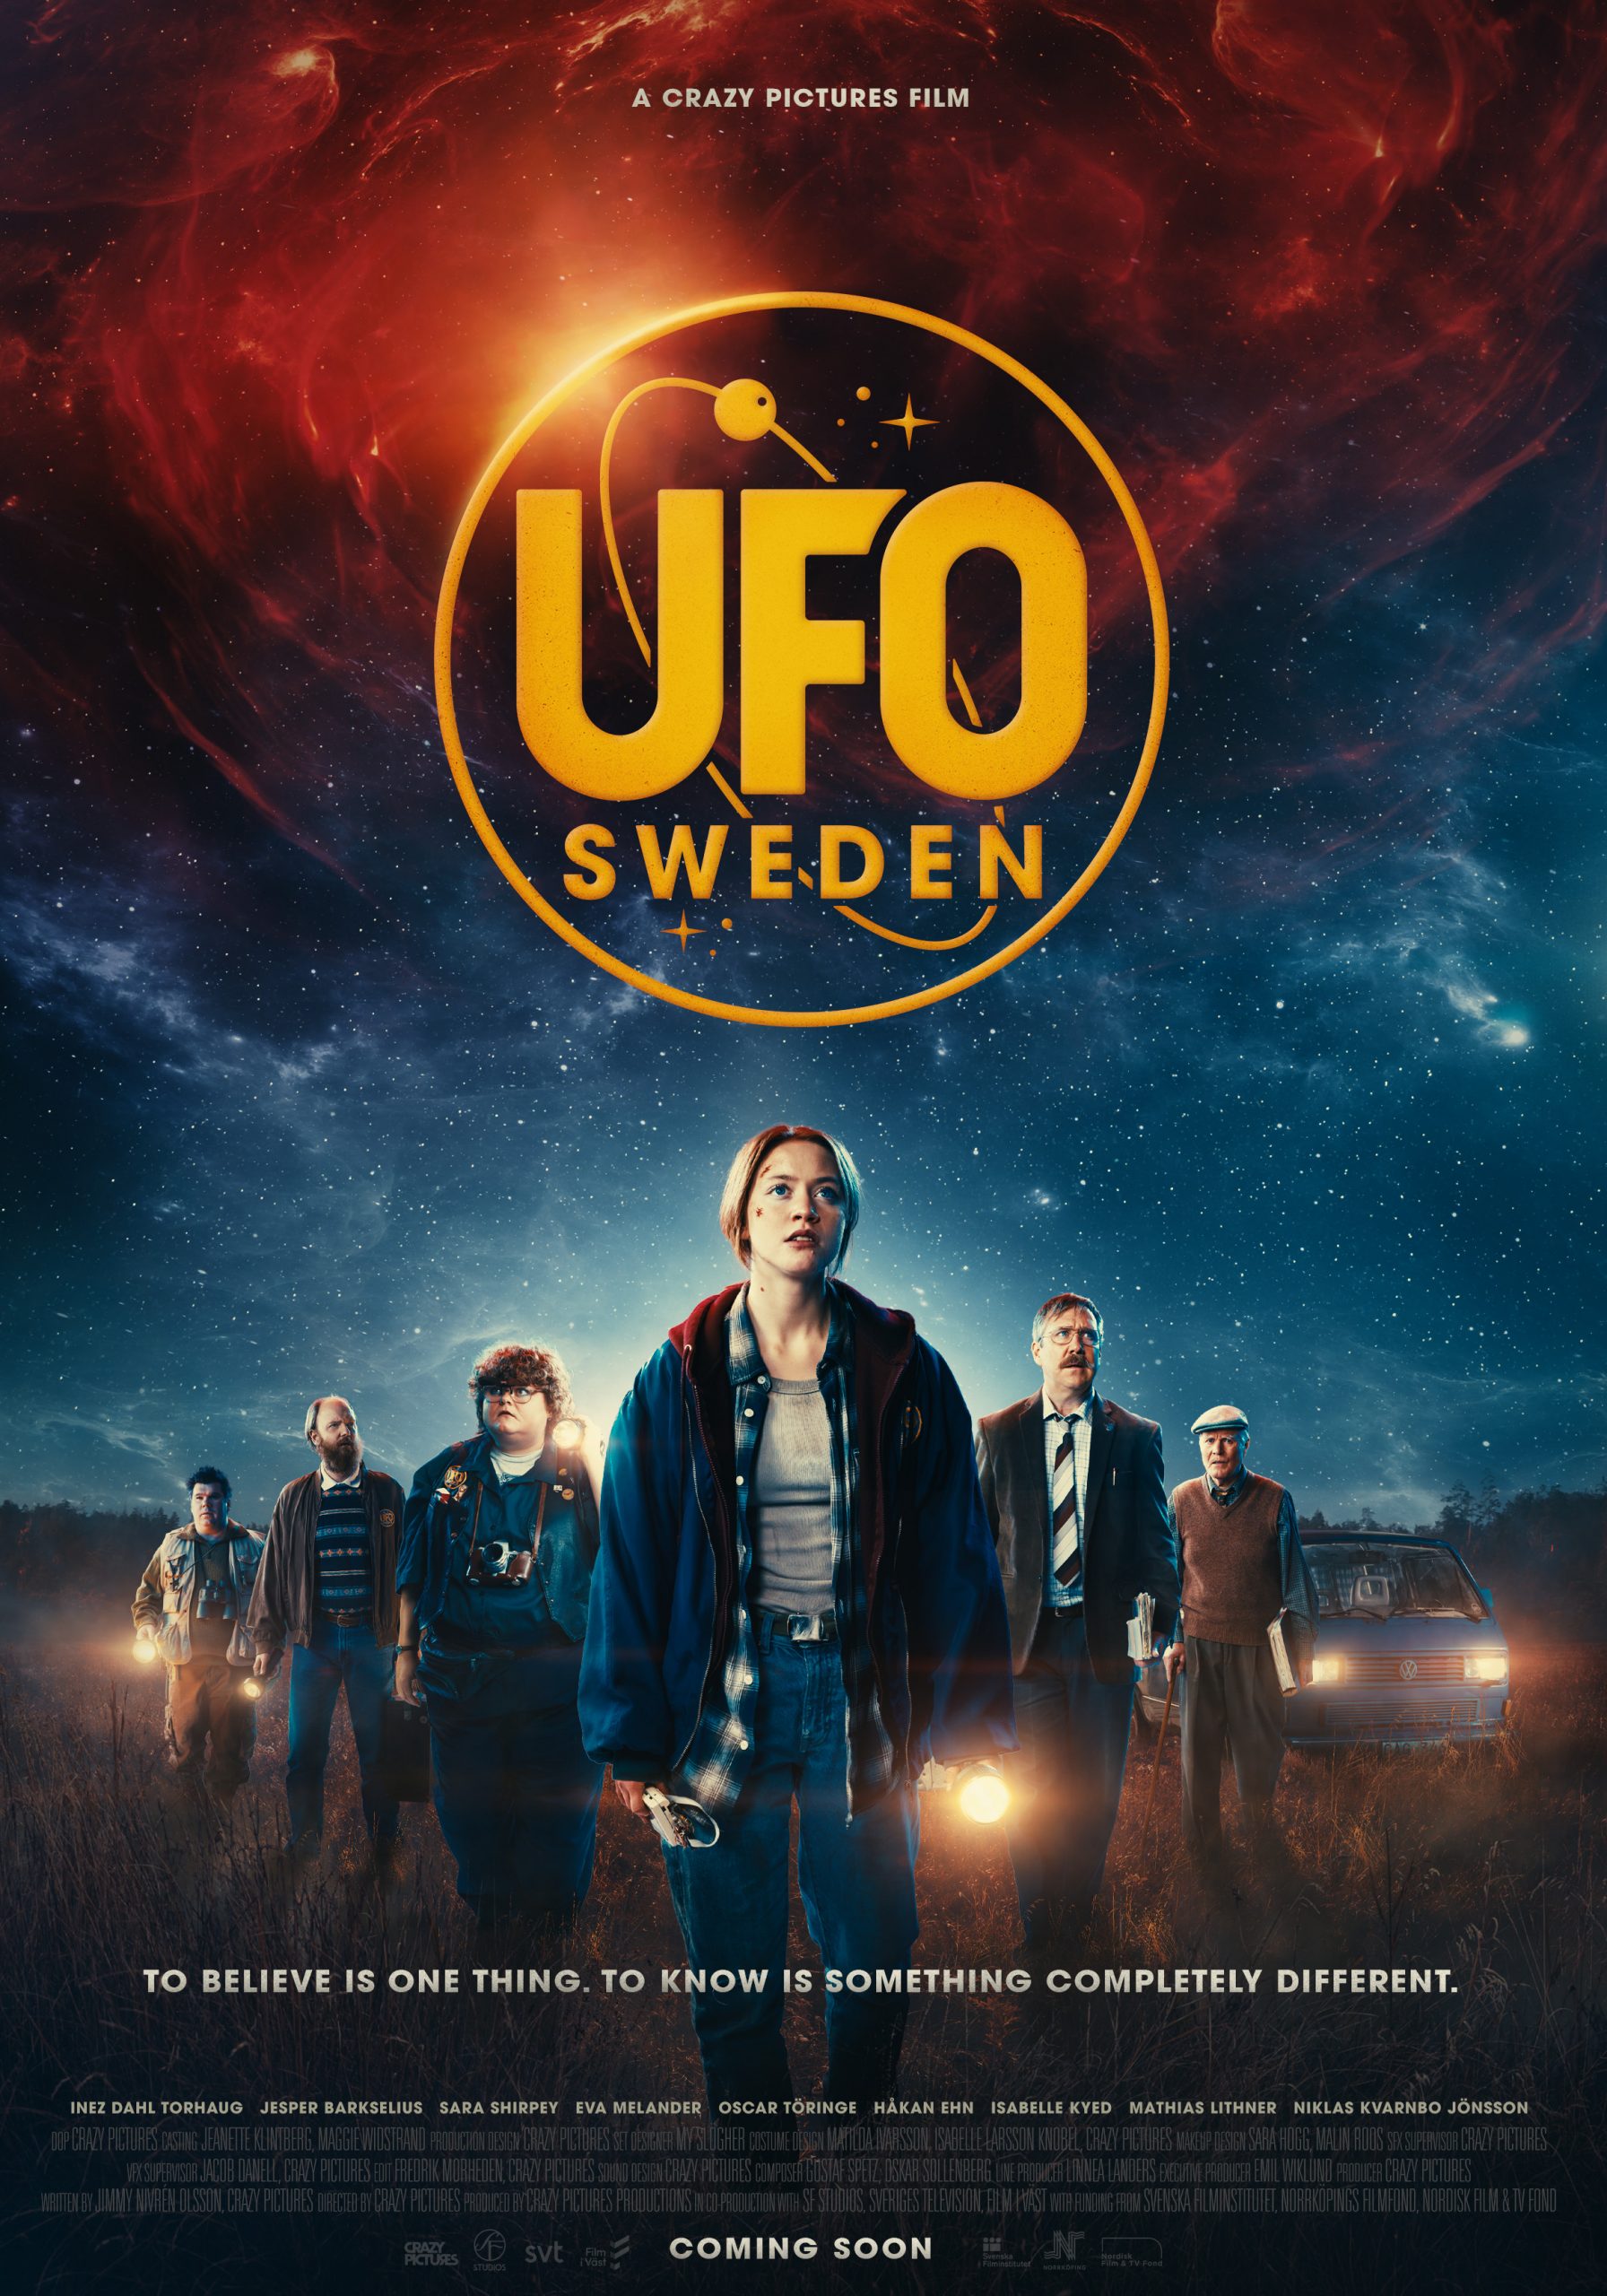 UFO 스웨덴 다음영화